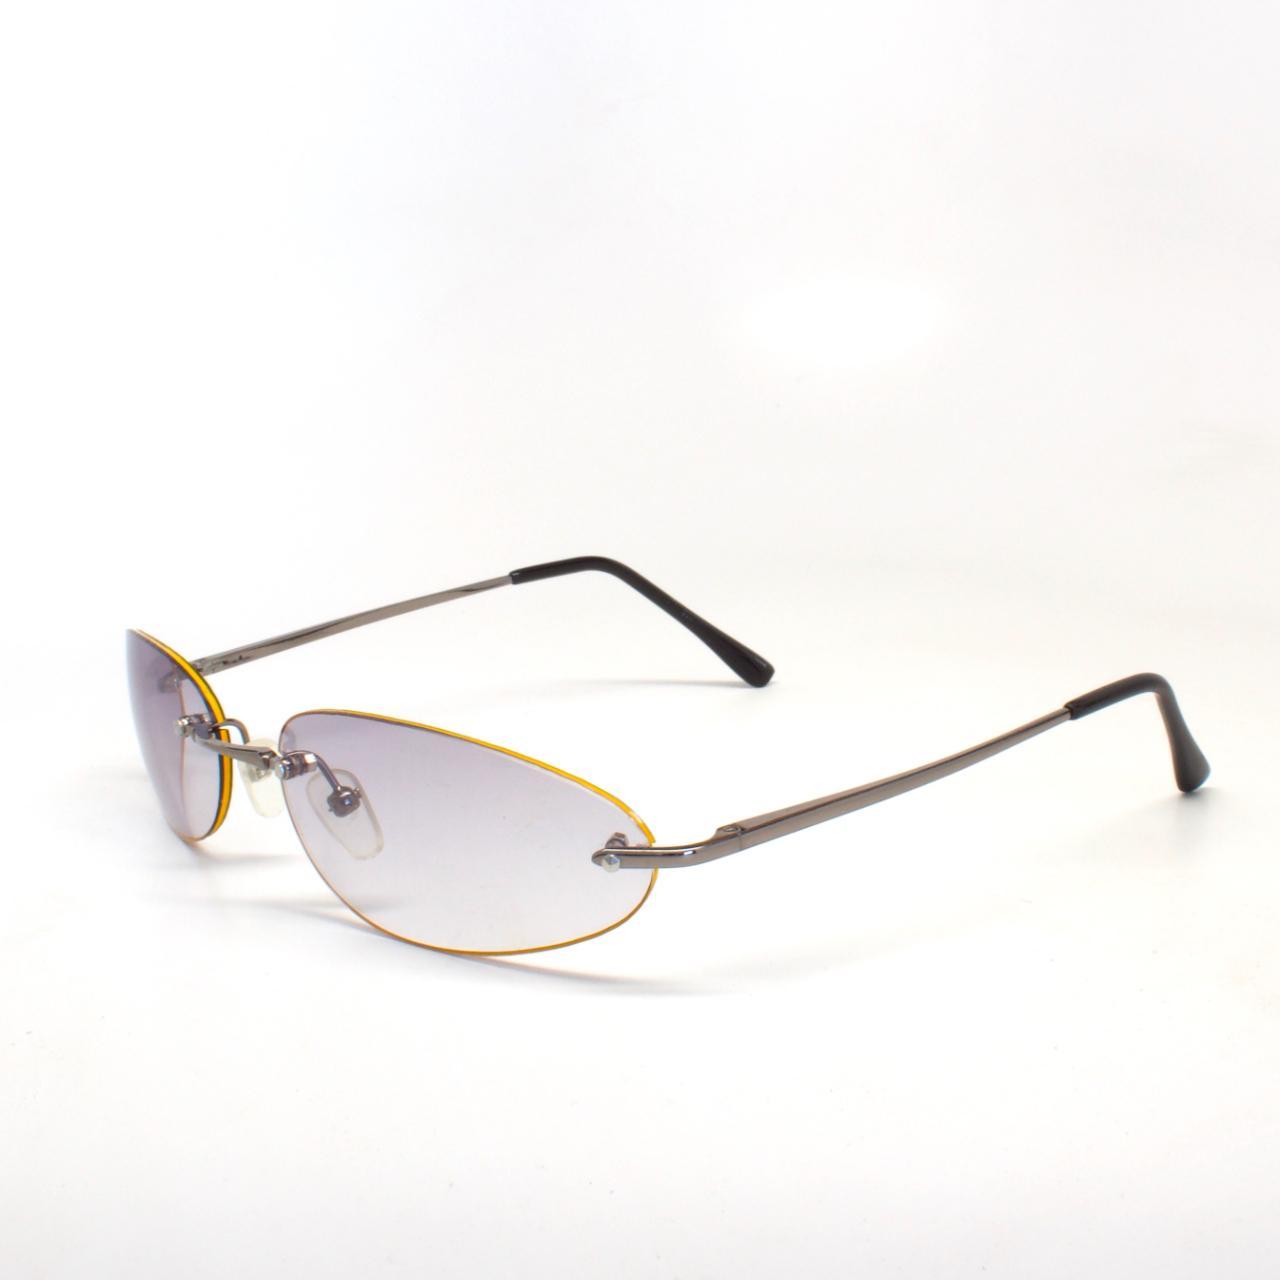 Chanel 5494 Sunglasses Black/Grey Square Women